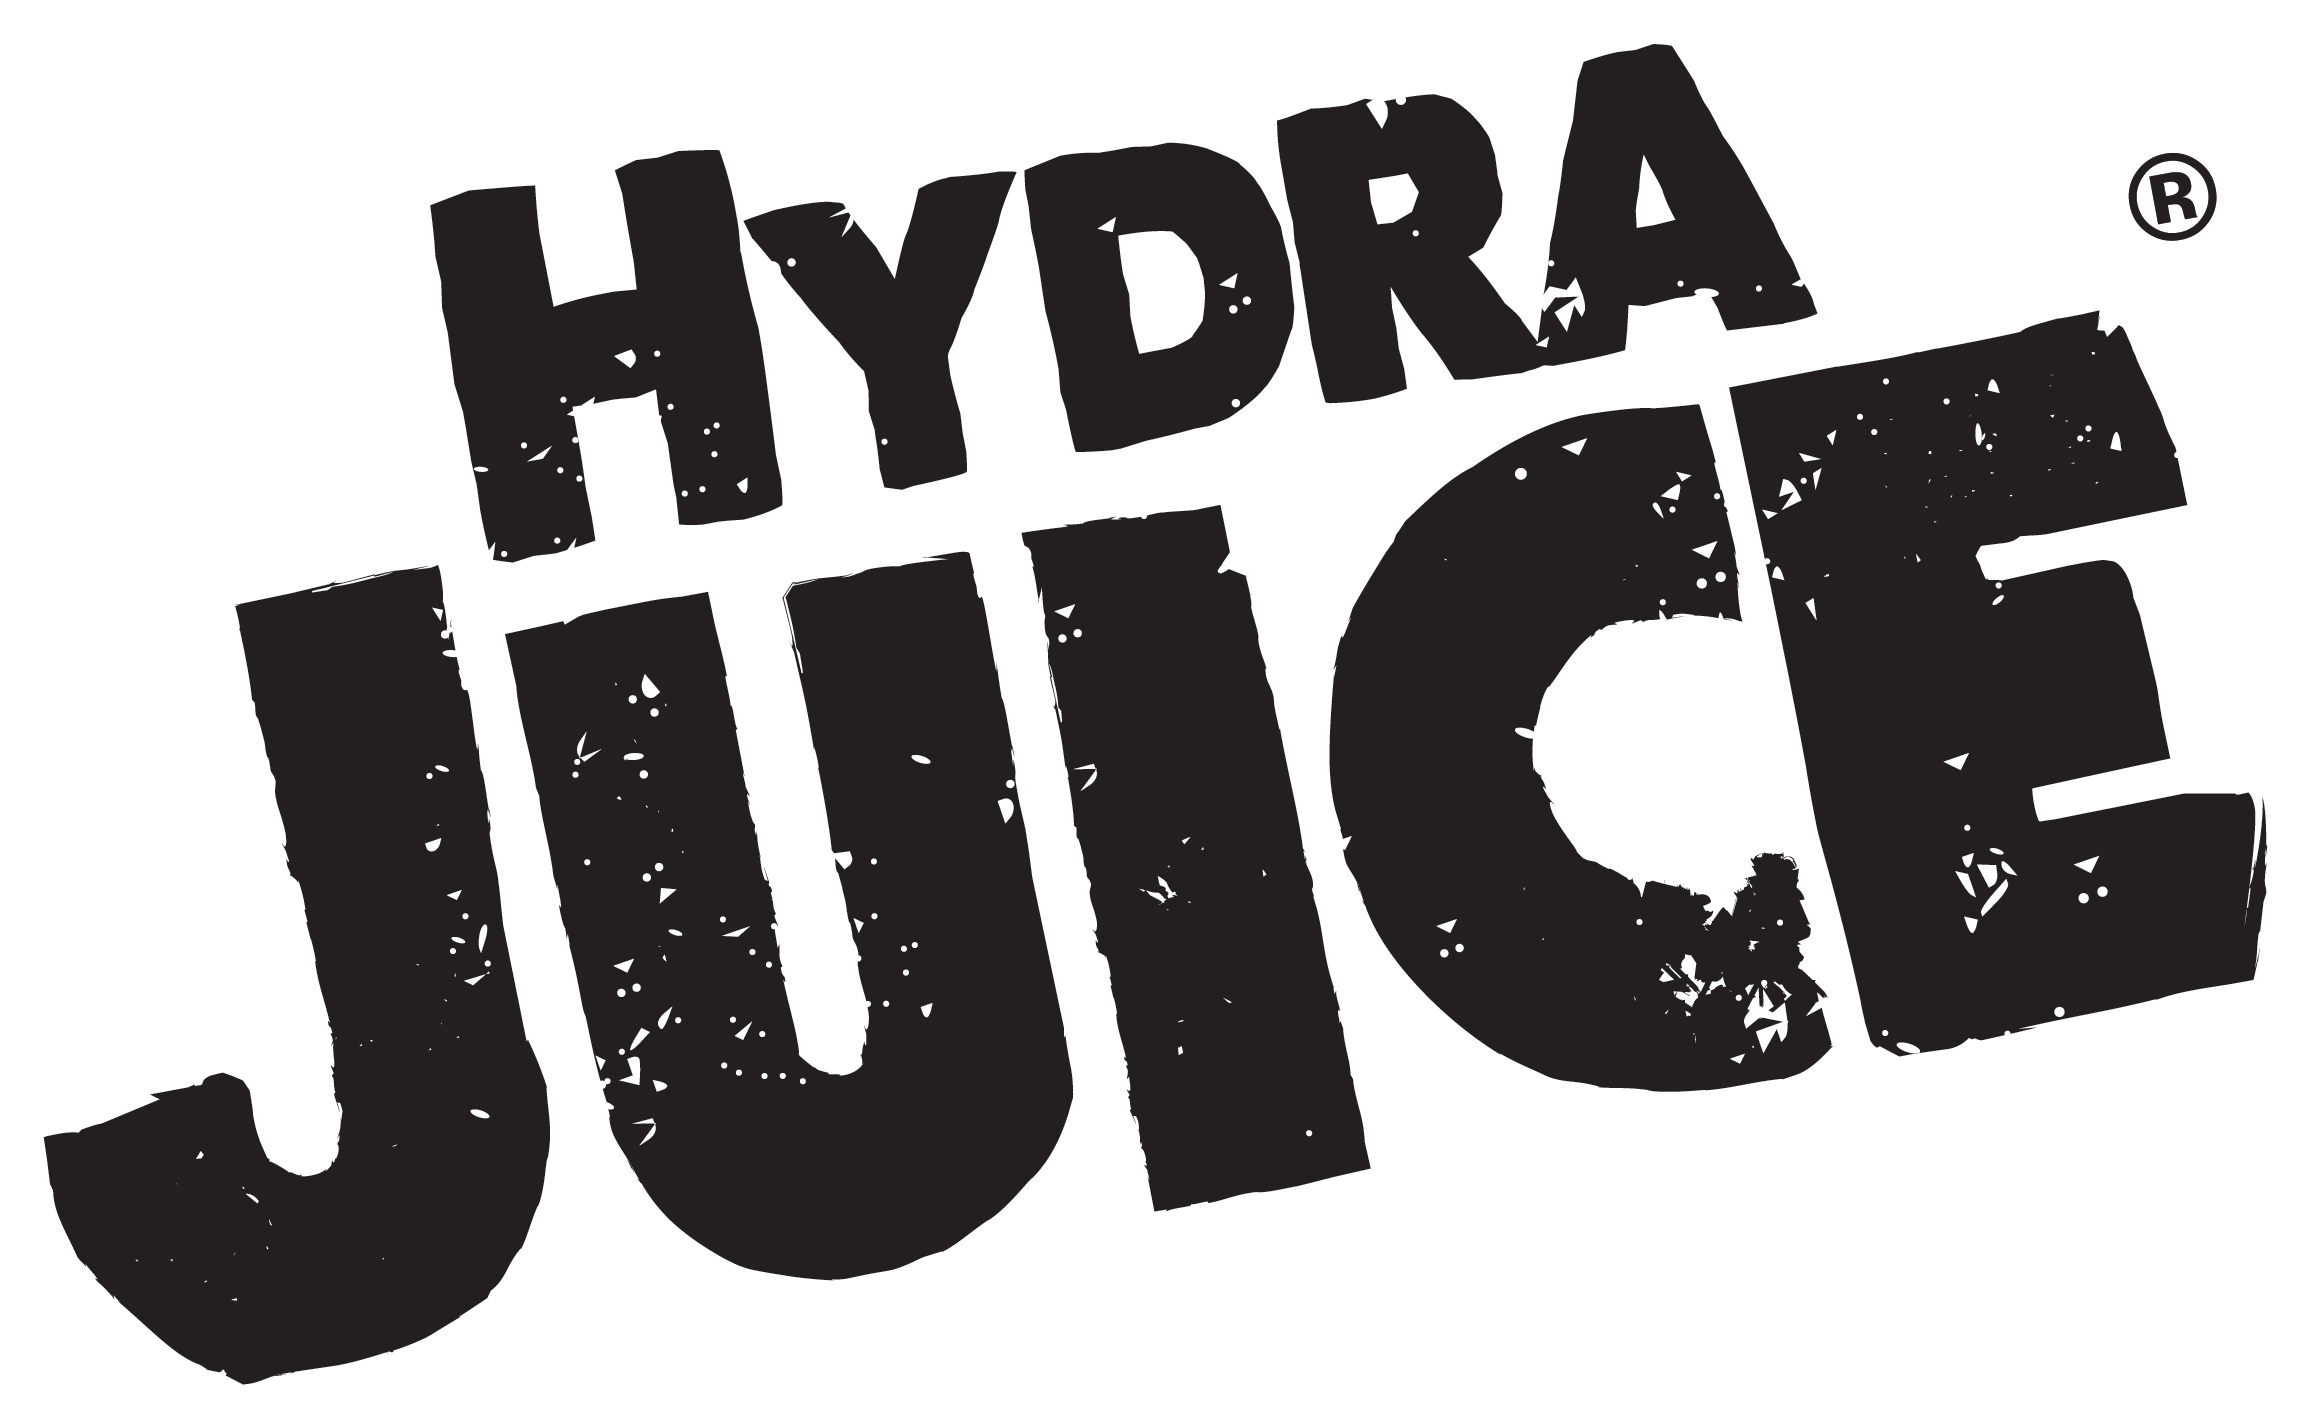 Hydra logo PNG прозрачное изображение